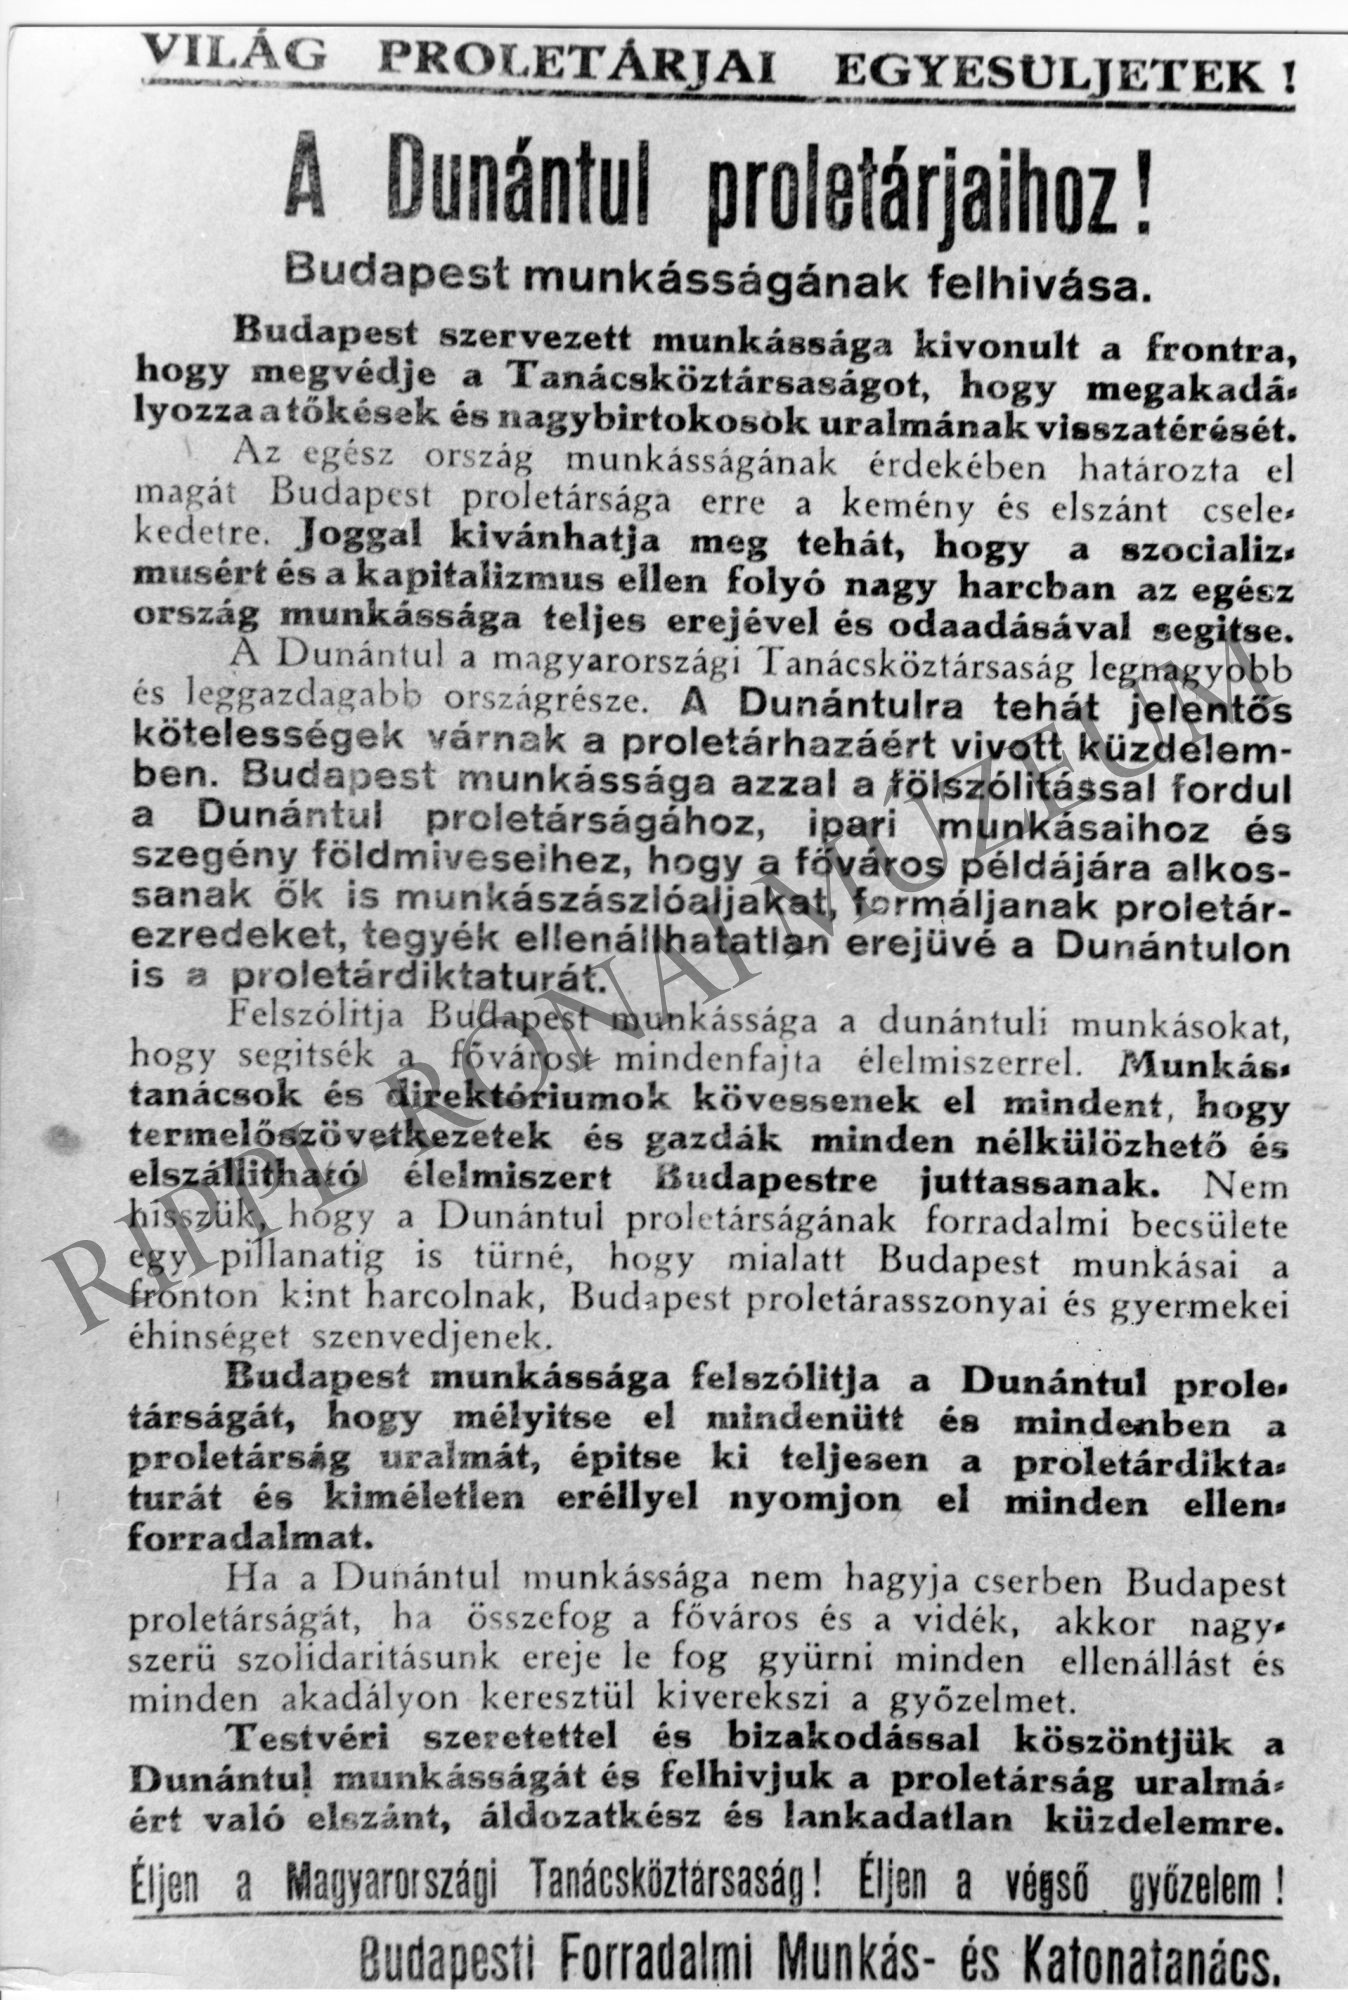 1919-es plakát: A Budapesti Forradalmi Munkás- és Katonatanács felhívása "A Dunántúl proletárjaihoz!" (Rippl-Rónai Múzeum CC BY-NC-SA)